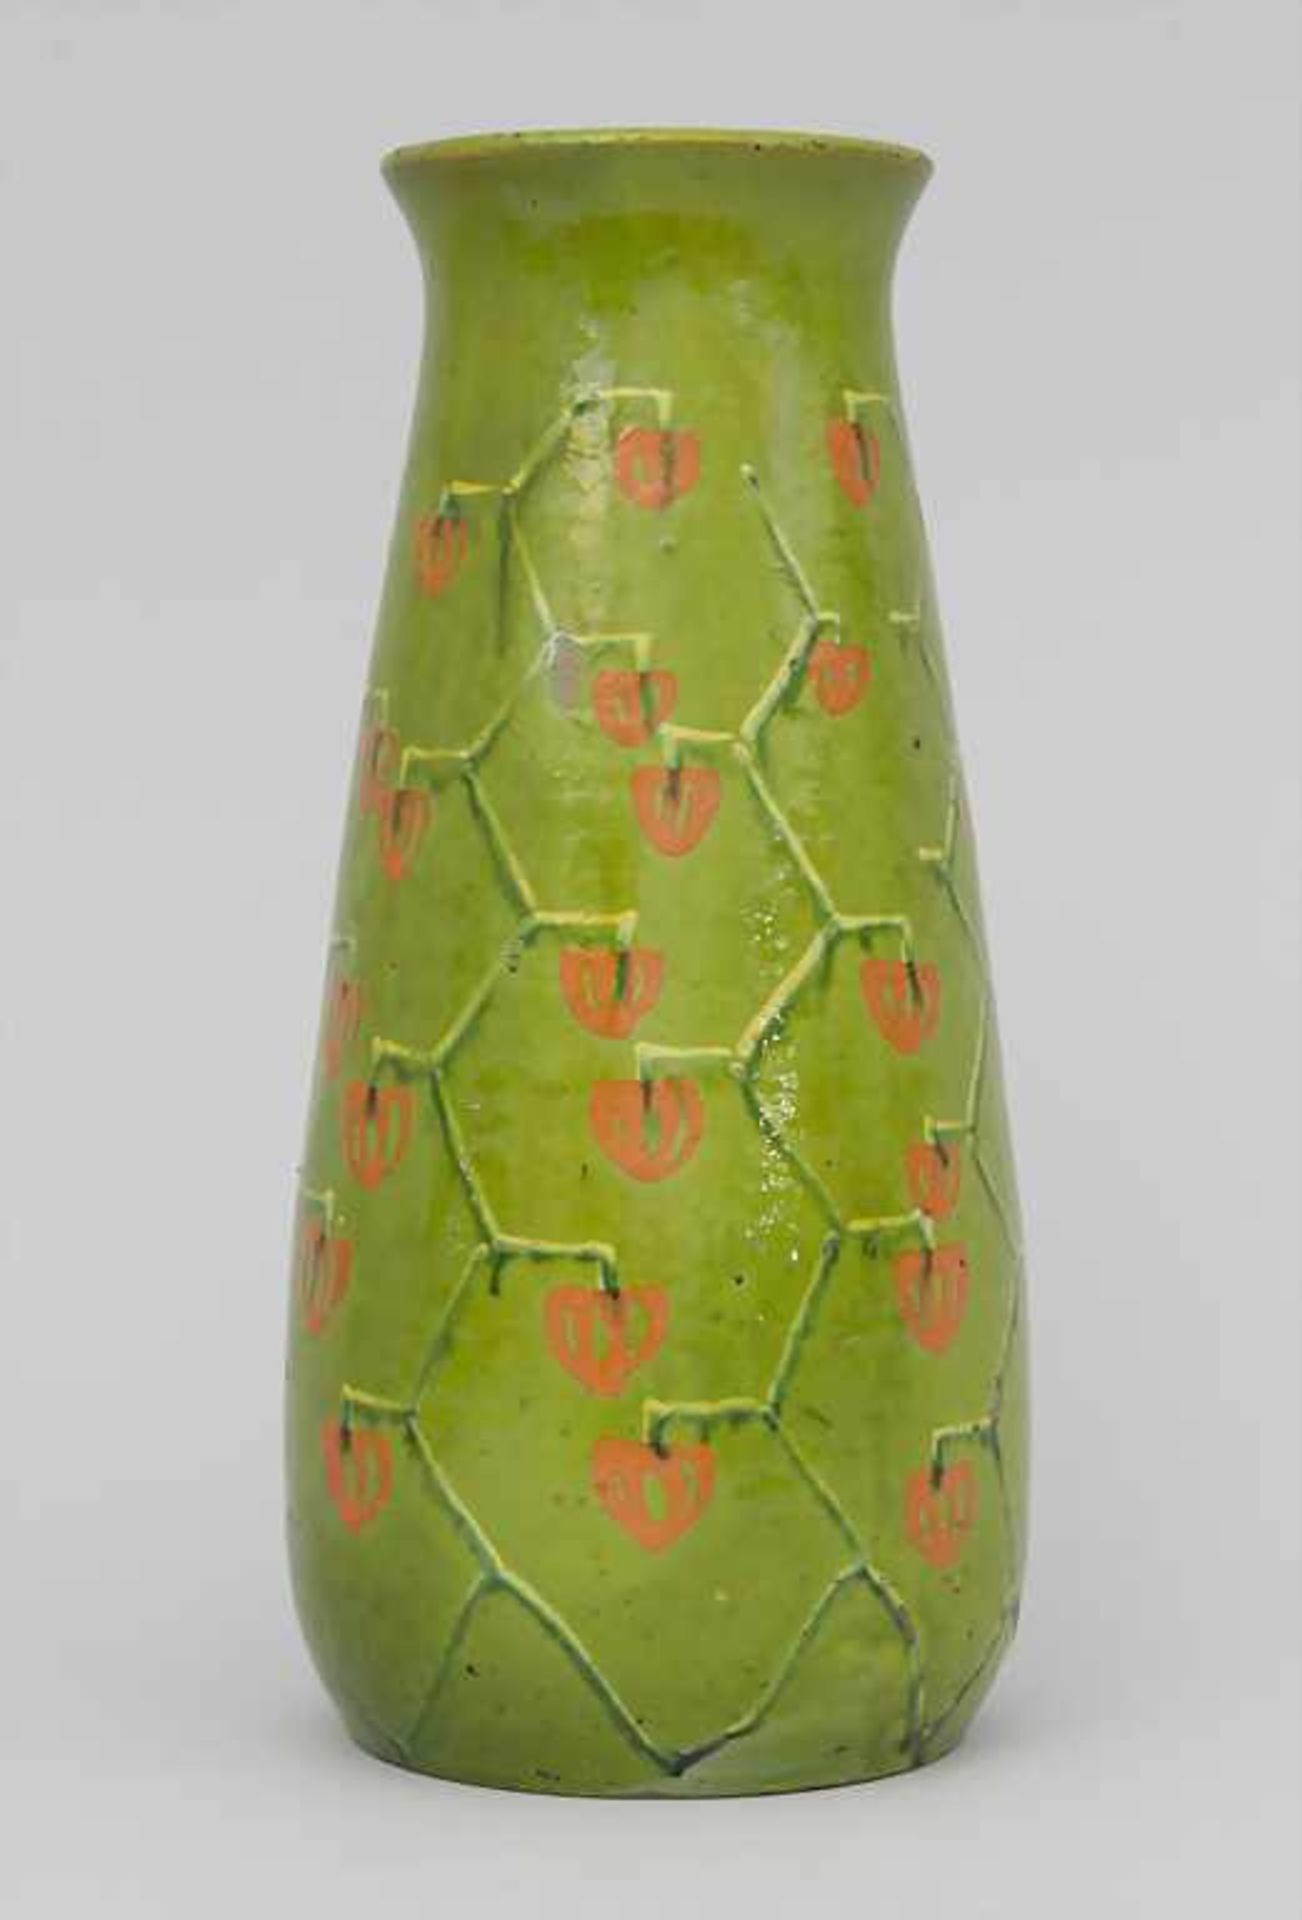 Jugendstil Vase / An Art Nouveau vase, um 1903 - Image 2 of 6